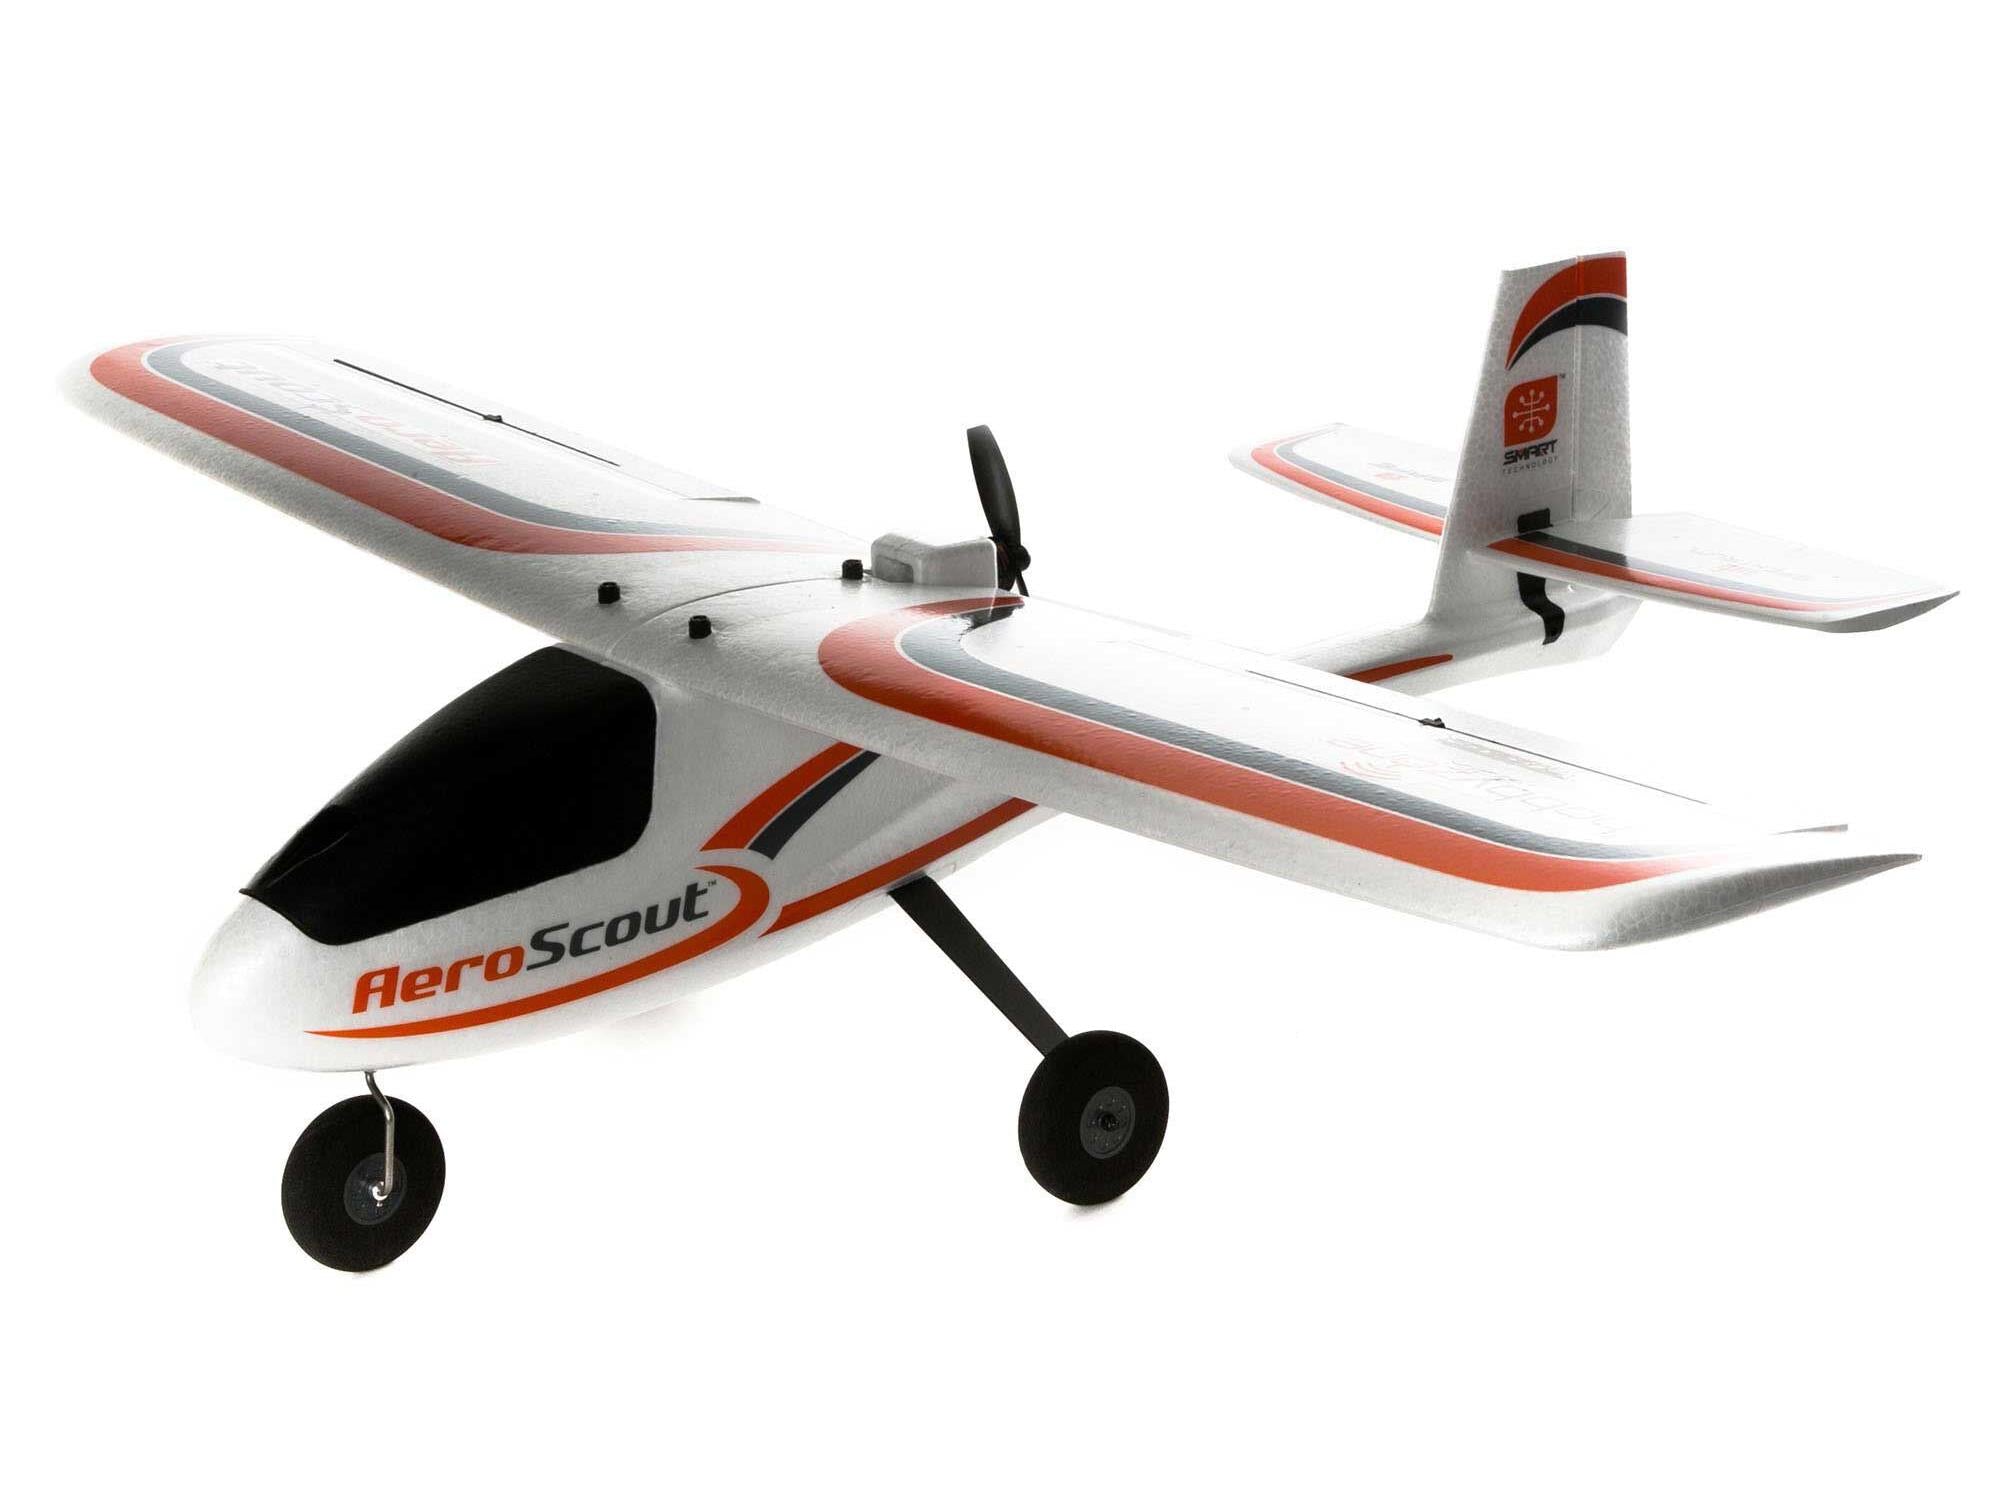 Hobbyzone AeroScout S 2 1.1m RTF Basic with SAFE HBZ380001